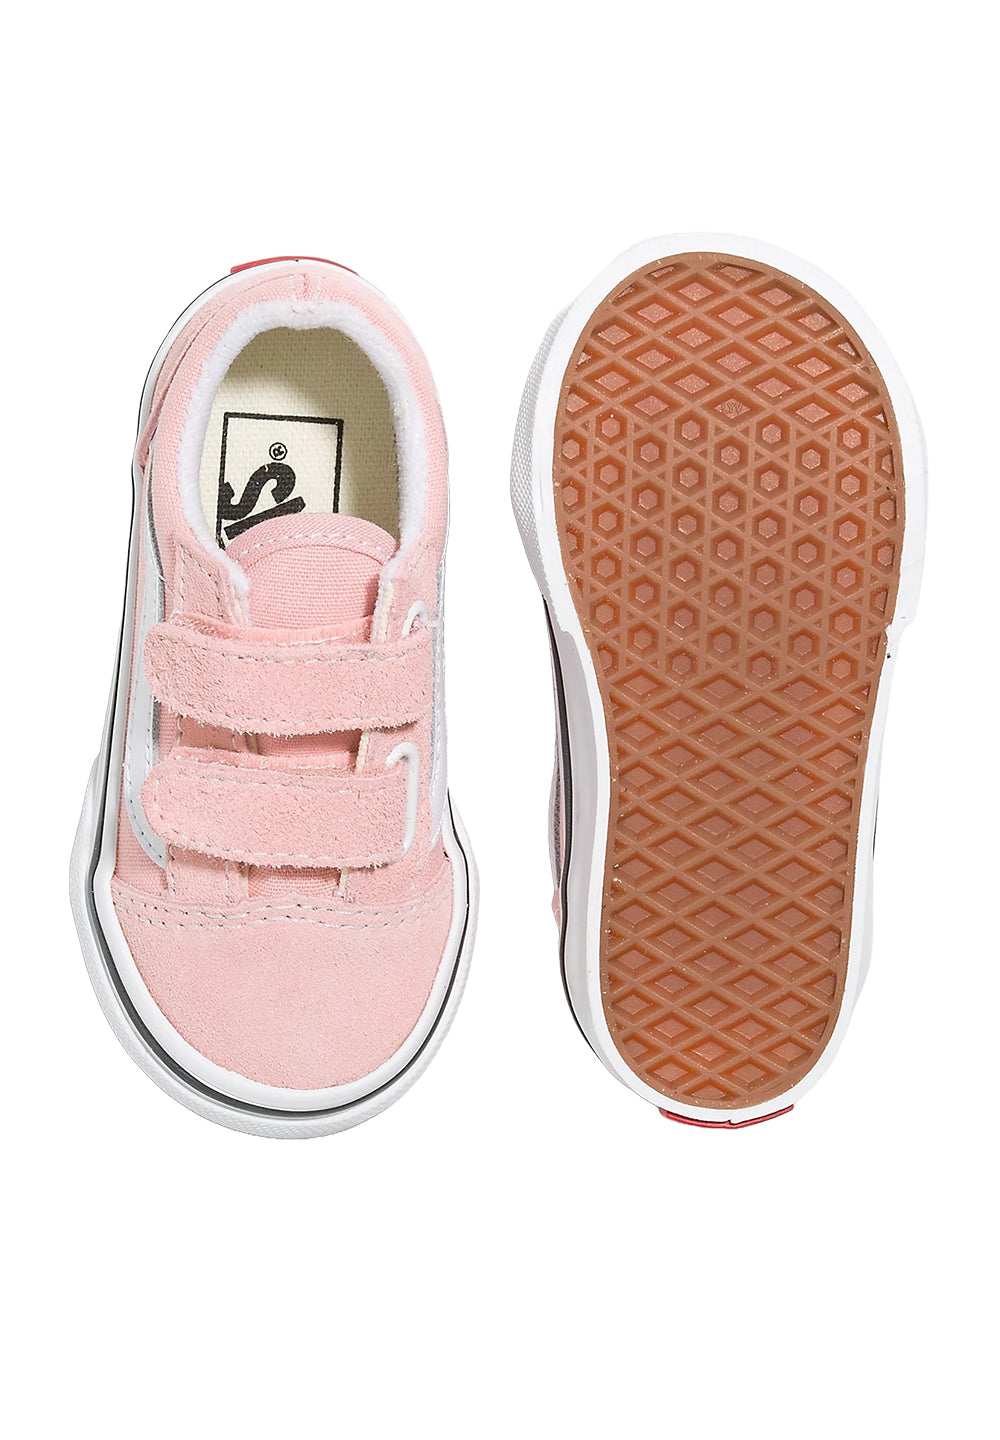 Scarpe rosa per neonata - Primamoda kids